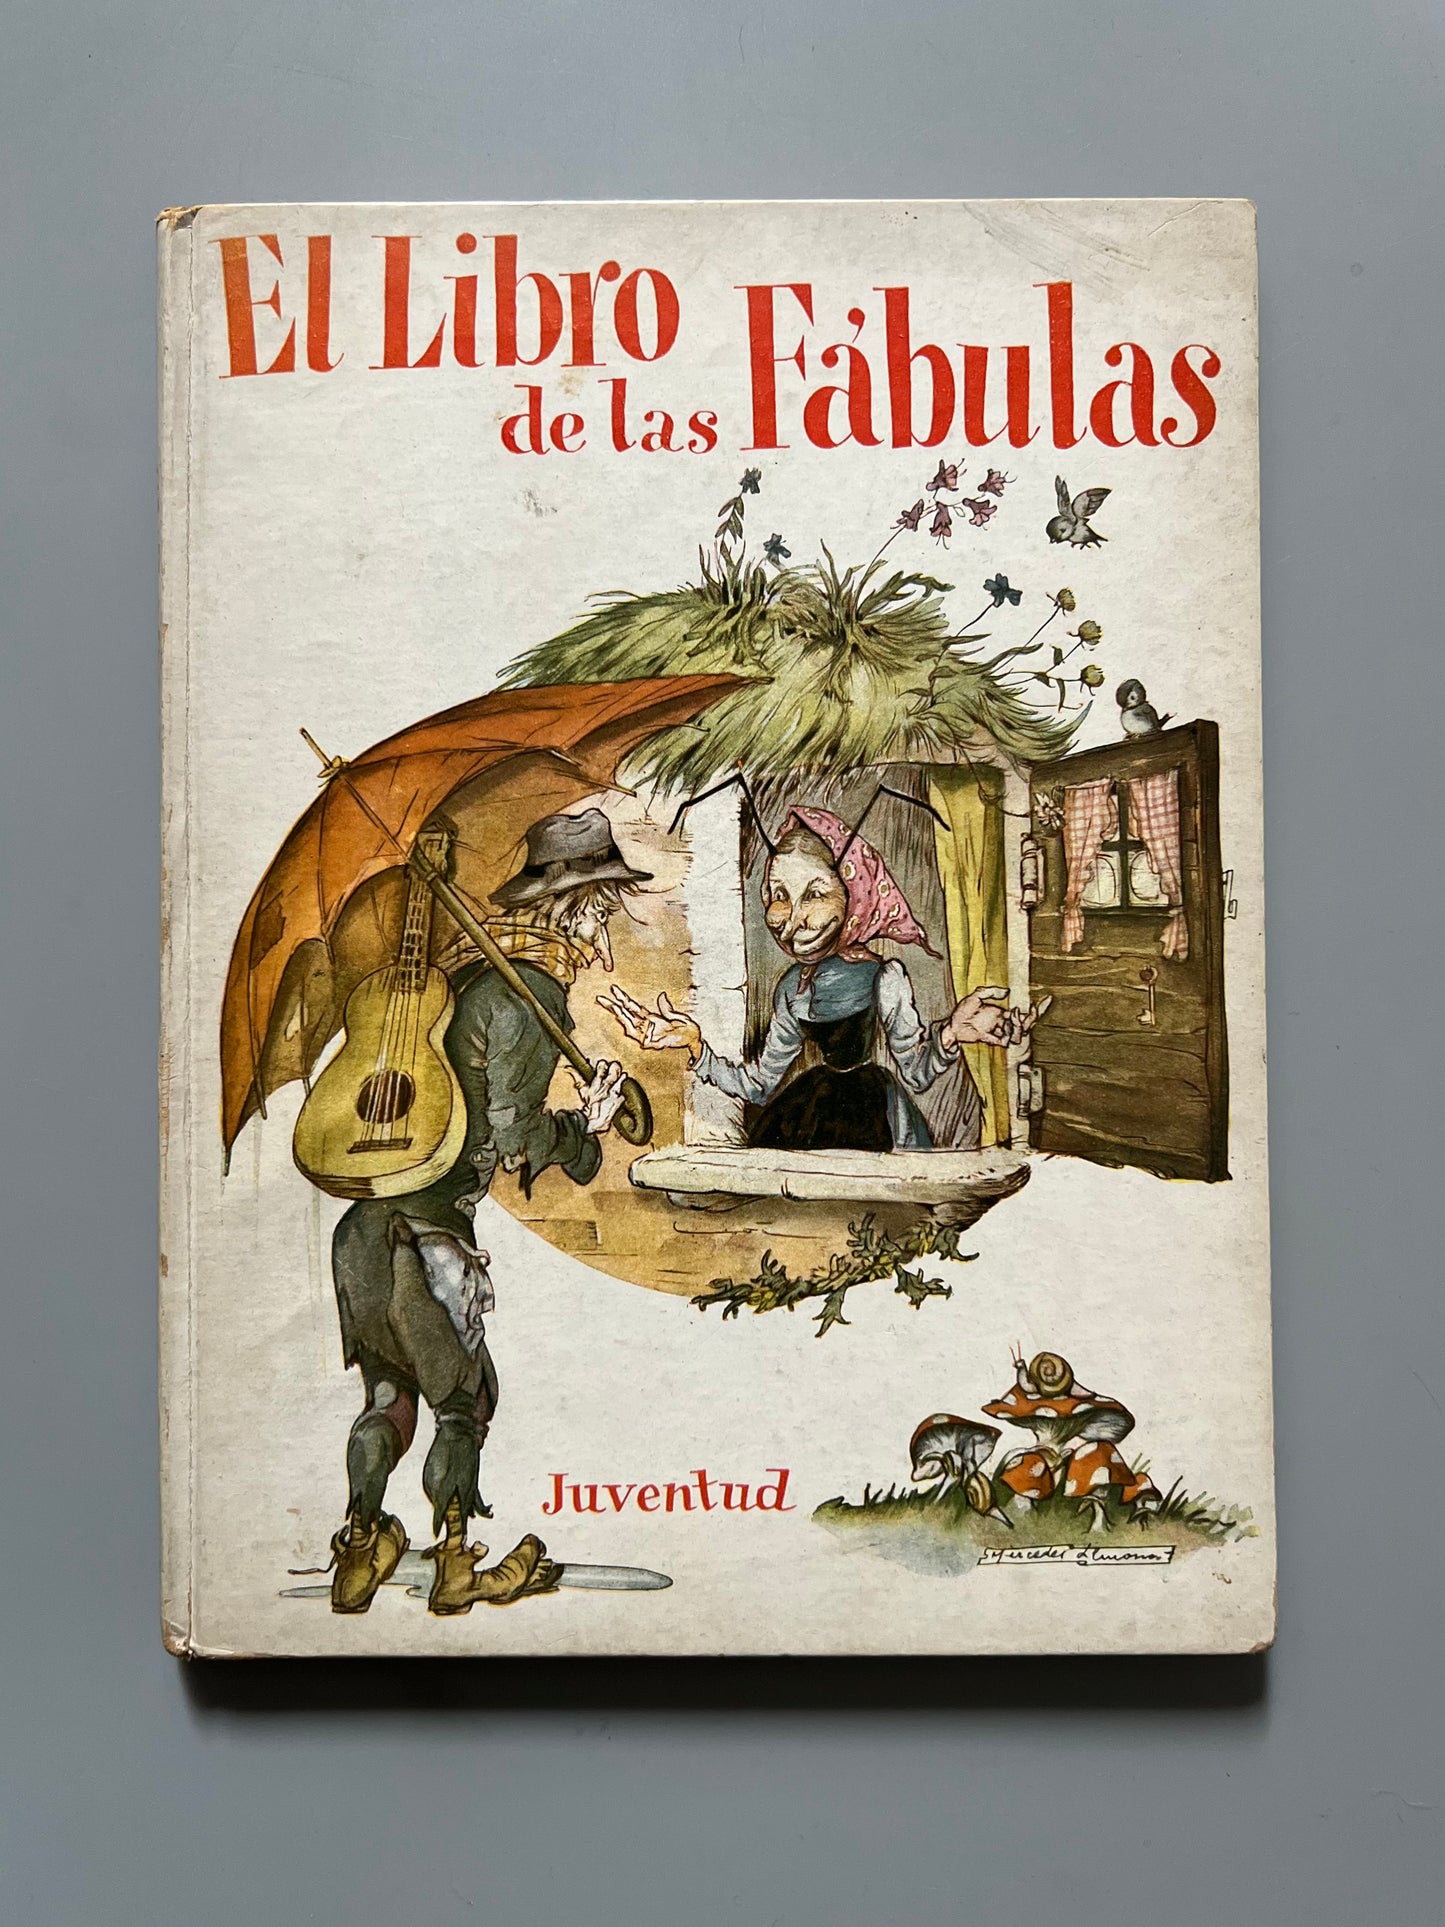 El libro de las fábulas - Editorial Juventud, 1943